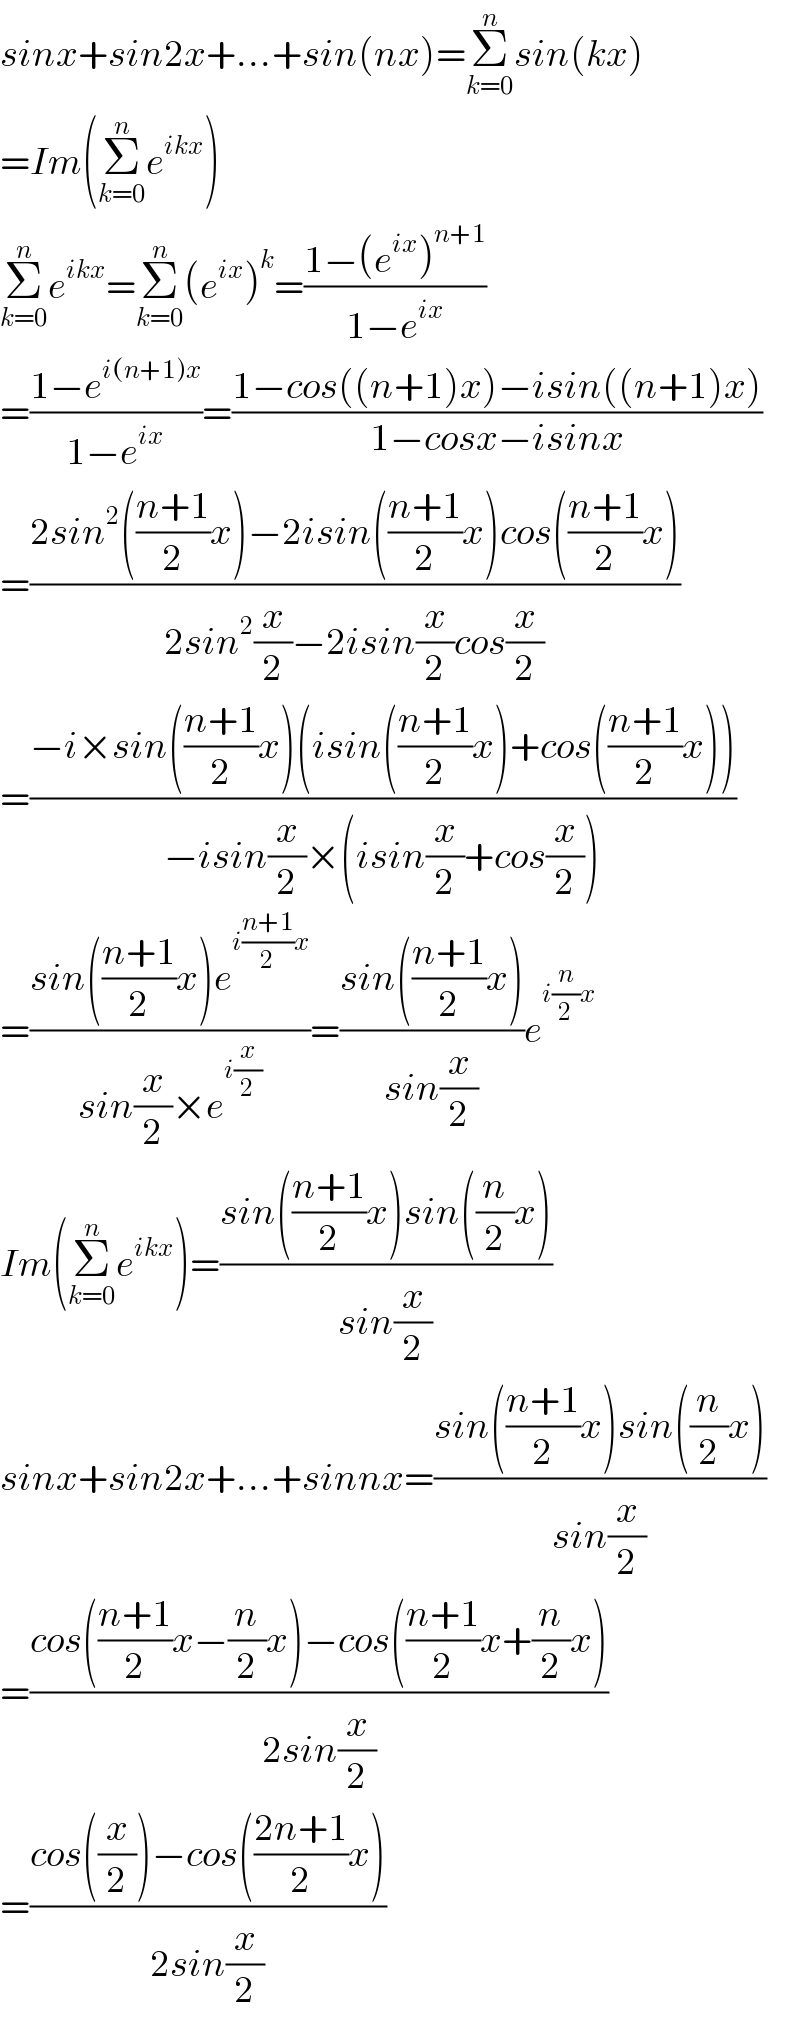 sinx+sin2x+...+sin(nx)=Σ_(k=0) ^n sin(kx)  =Im(Σ_(k=0) ^n e^(ikx) )  Σ_(k=0) ^n e^(ikx) =Σ_(k=0) ^n (e^(ix) )^k =((1−(e^(ix) )^(n+1) )/(1−e^(ix) ))  =((1−e^(i(n+1)x) )/(1−e^(ix) ))=((1−cos((n+1)x)−isin((n+1)x))/(1−cosx−isinx))  =((2sin^2 (((n+1)/2)x)−2isin(((n+1)/2)x)cos(((n+1)/2)x))/(2sin^2 (x/2)−2isin(x/2)cos(x/2)))  =((−i×sin(((n+1)/2)x)(isin(((n+1)/2)x)+cos(((n+1)/2)x)))/(−isin(x/2)×(isin(x/2)+cos(x/2))))  =((sin(((n+1)/2)x)e^(i((n+1)/2)x) )/(sin(x/2)×e^(i(x/2)) ))=((sin(((n+1)/2)x))/(sin(x/2)))e^(i(n/2)x)   Im(Σ_(k=0) ^n e^(ikx) )=((sin(((n+1)/2)x)sin((n/2)x))/(sin(x/2)))  sinx+sin2x+...+sinnx=((sin(((n+1)/2)x)sin((n/2)x))/(sin(x/2)))  =((cos(((n+1)/2)x−(n/2)x)−cos(((n+1)/2)x+(n/2)x))/(2sin(x/2)))  =((cos((x/2))−cos(((2n+1)/2)x))/(2sin(x/2)))  